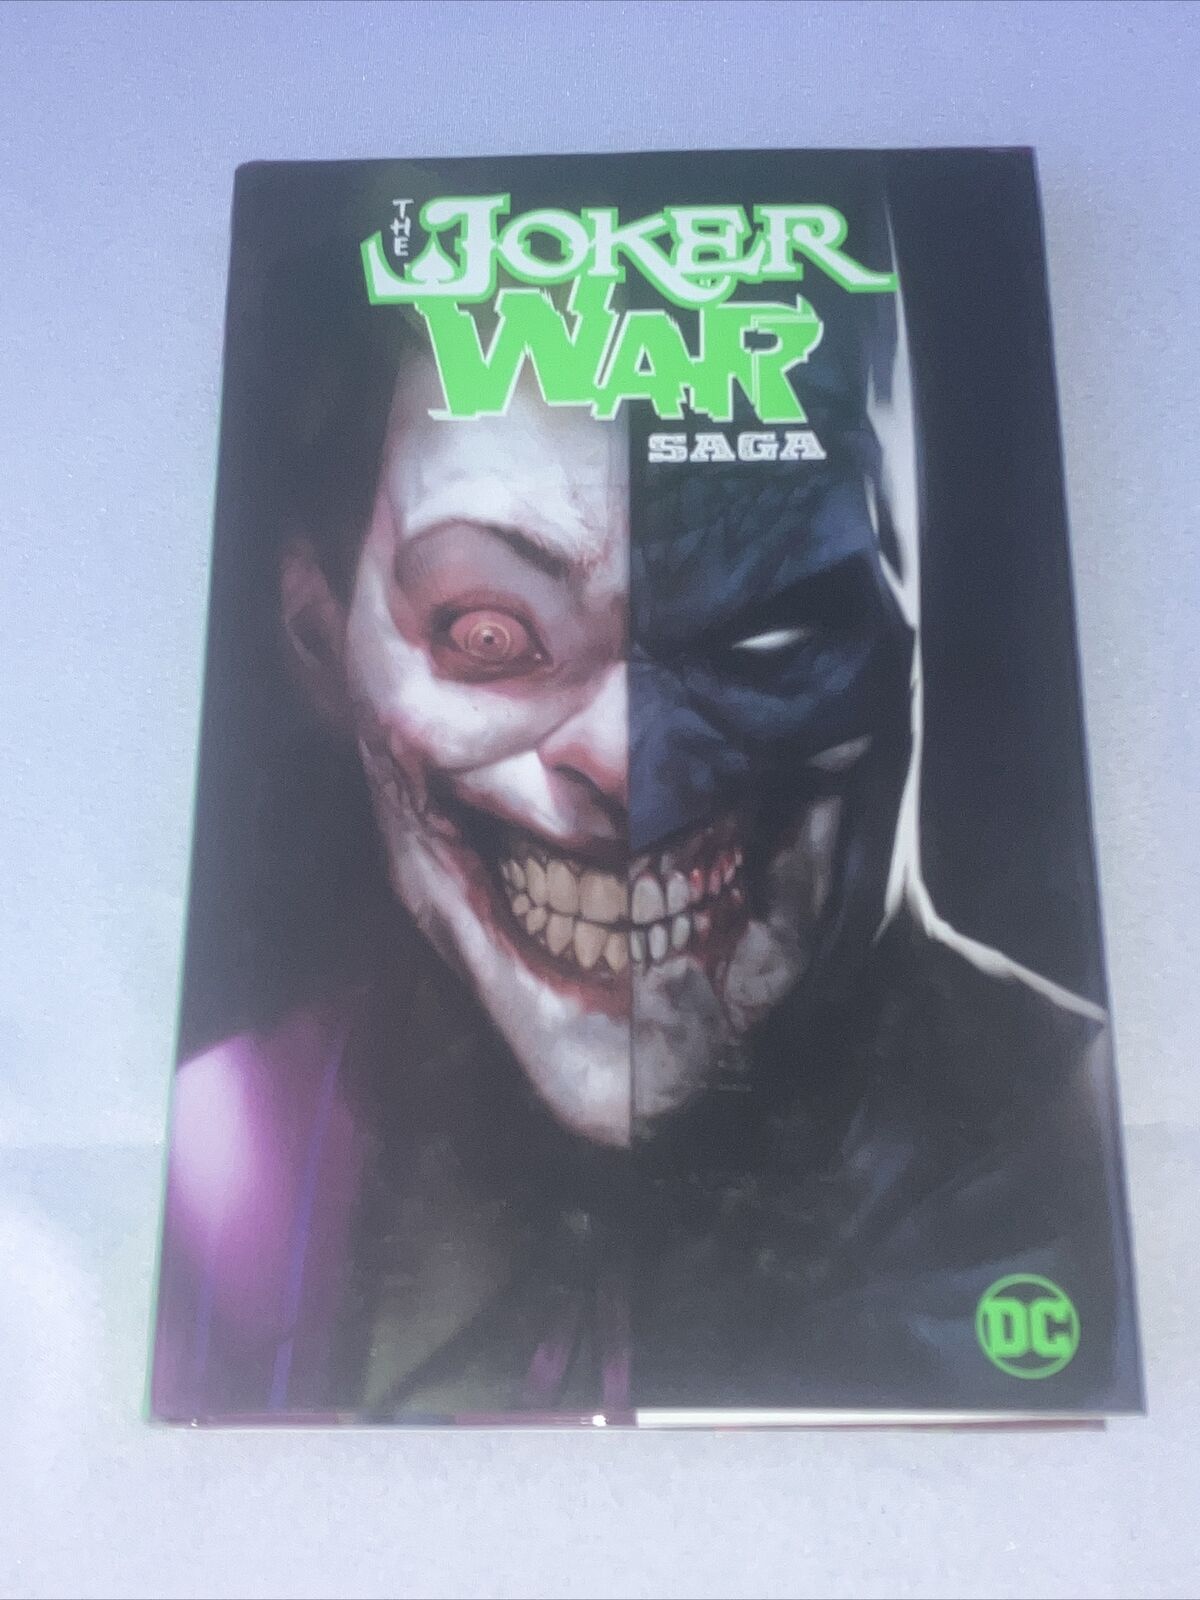 The Joker War Saga (DC Comics April 2021)